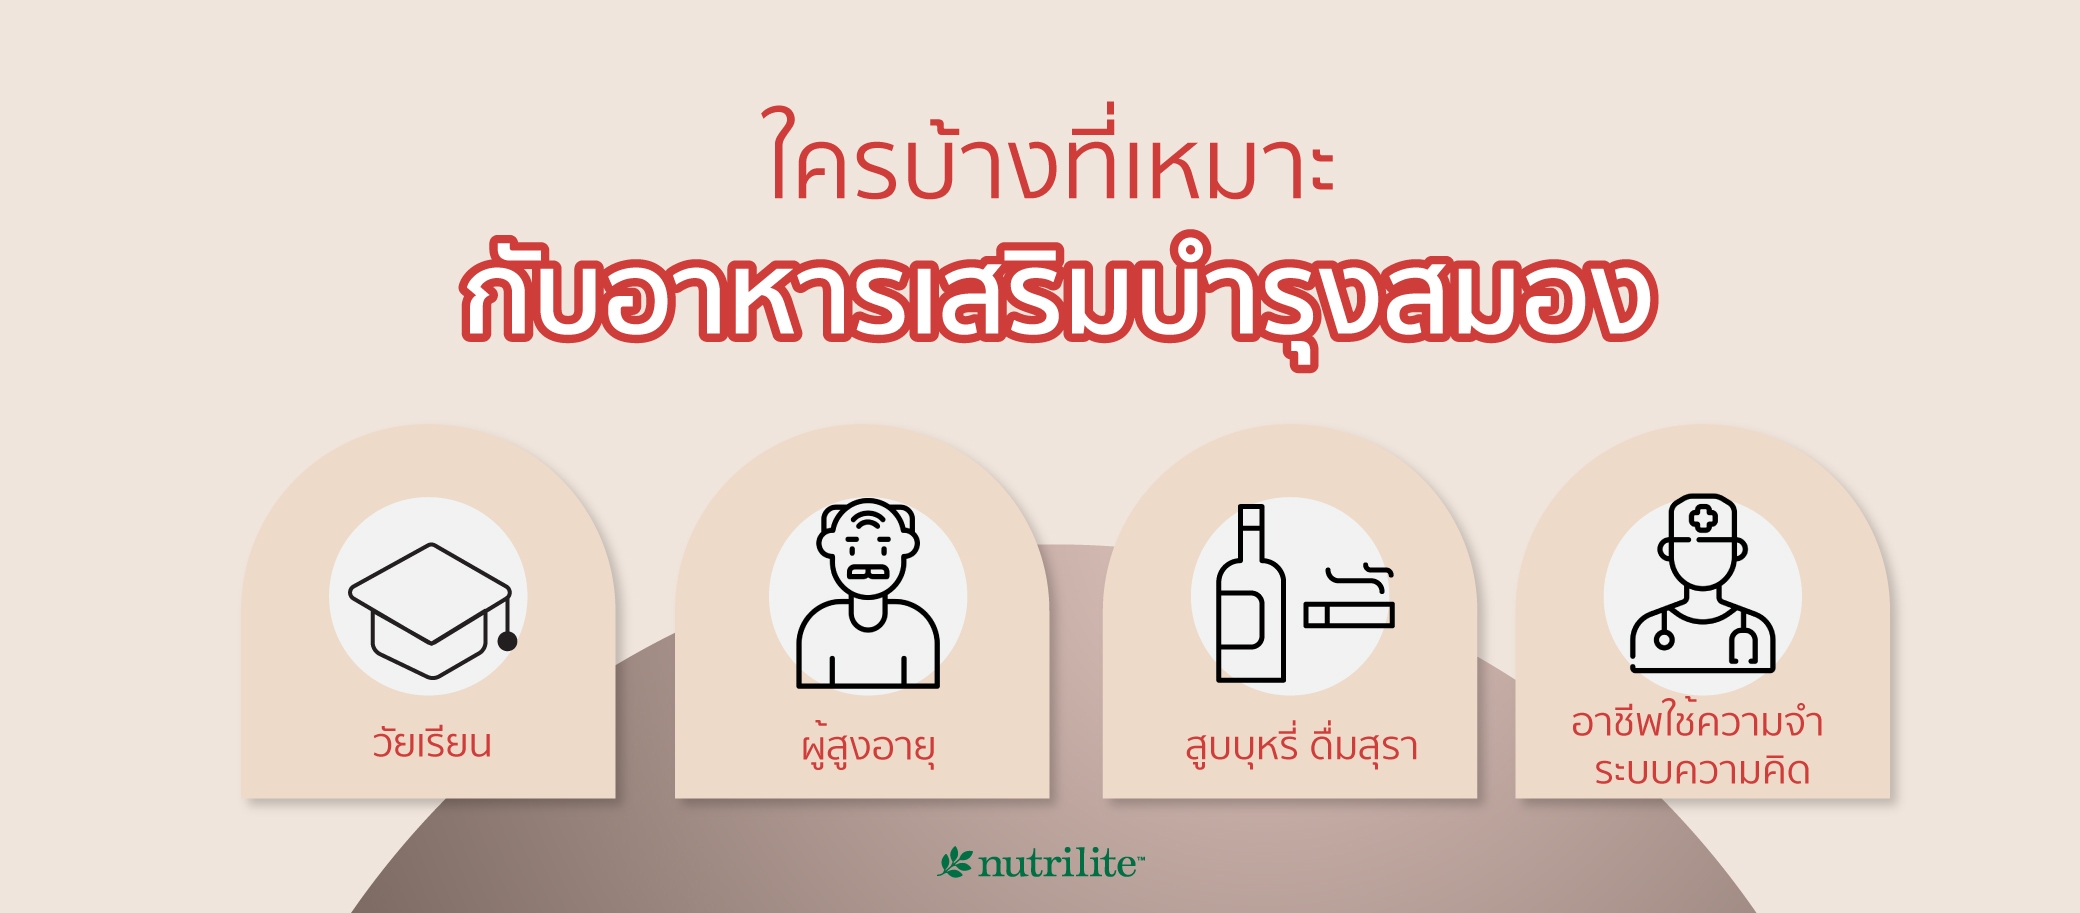 วิตามินบำรุงสมอง อาหารเสริมเพิ่มความจำดีสำหรับวัยทำงานและผู้สูงอายุ |  Nutrilite™ Thailand